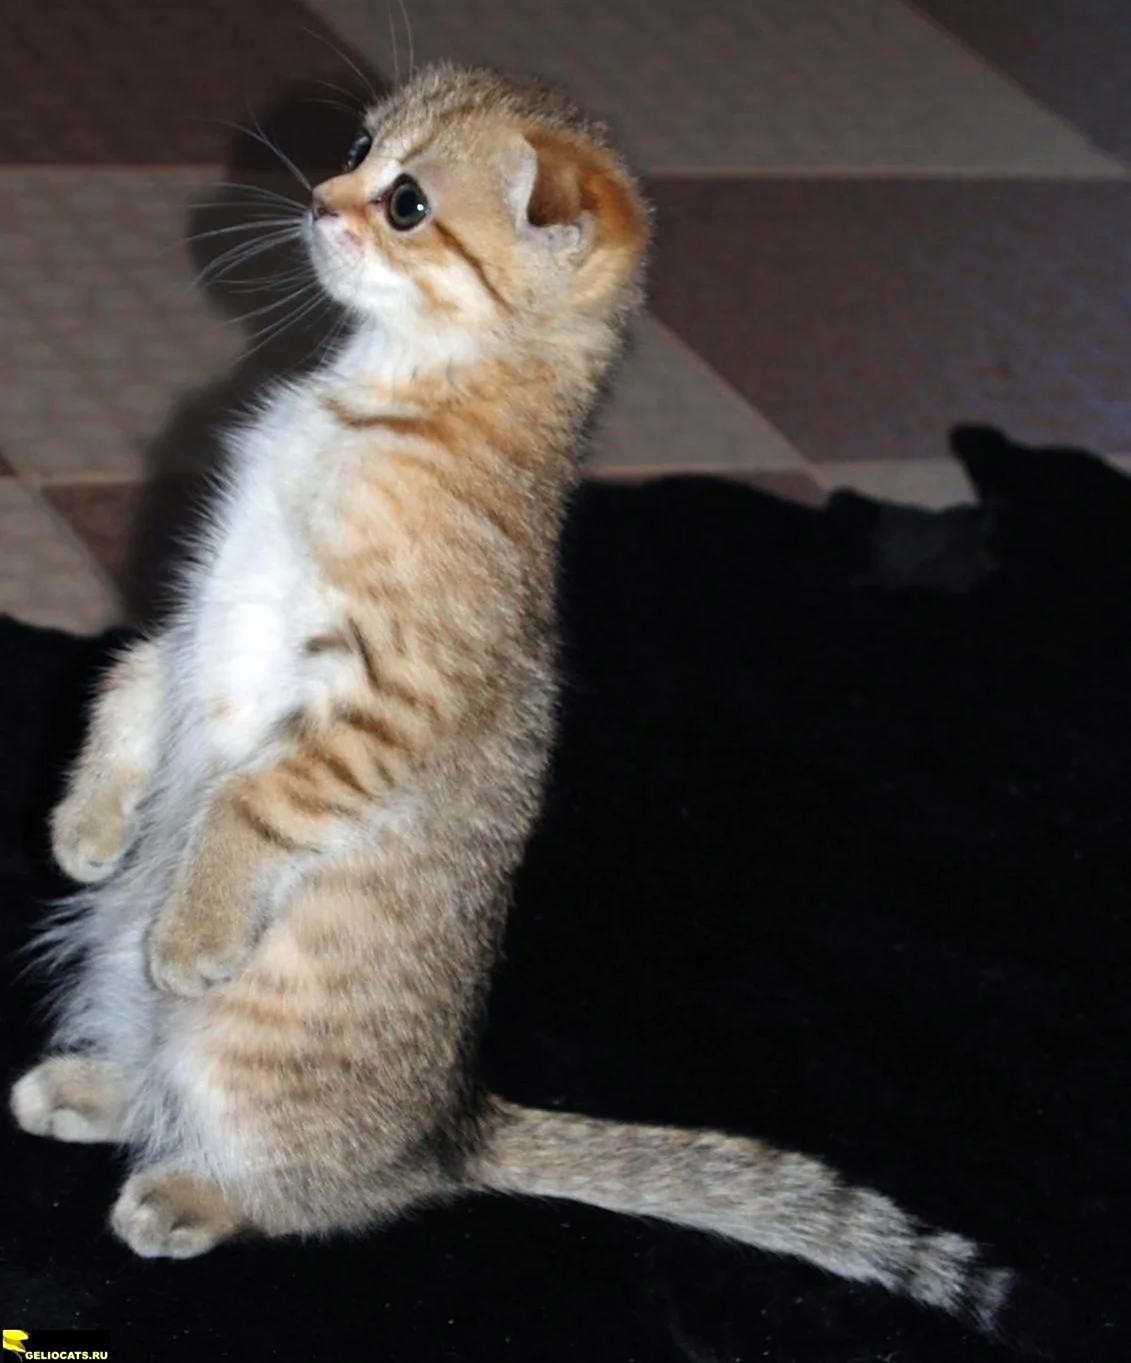 Шотландская вислоухая кошка суслик. Красивое животное